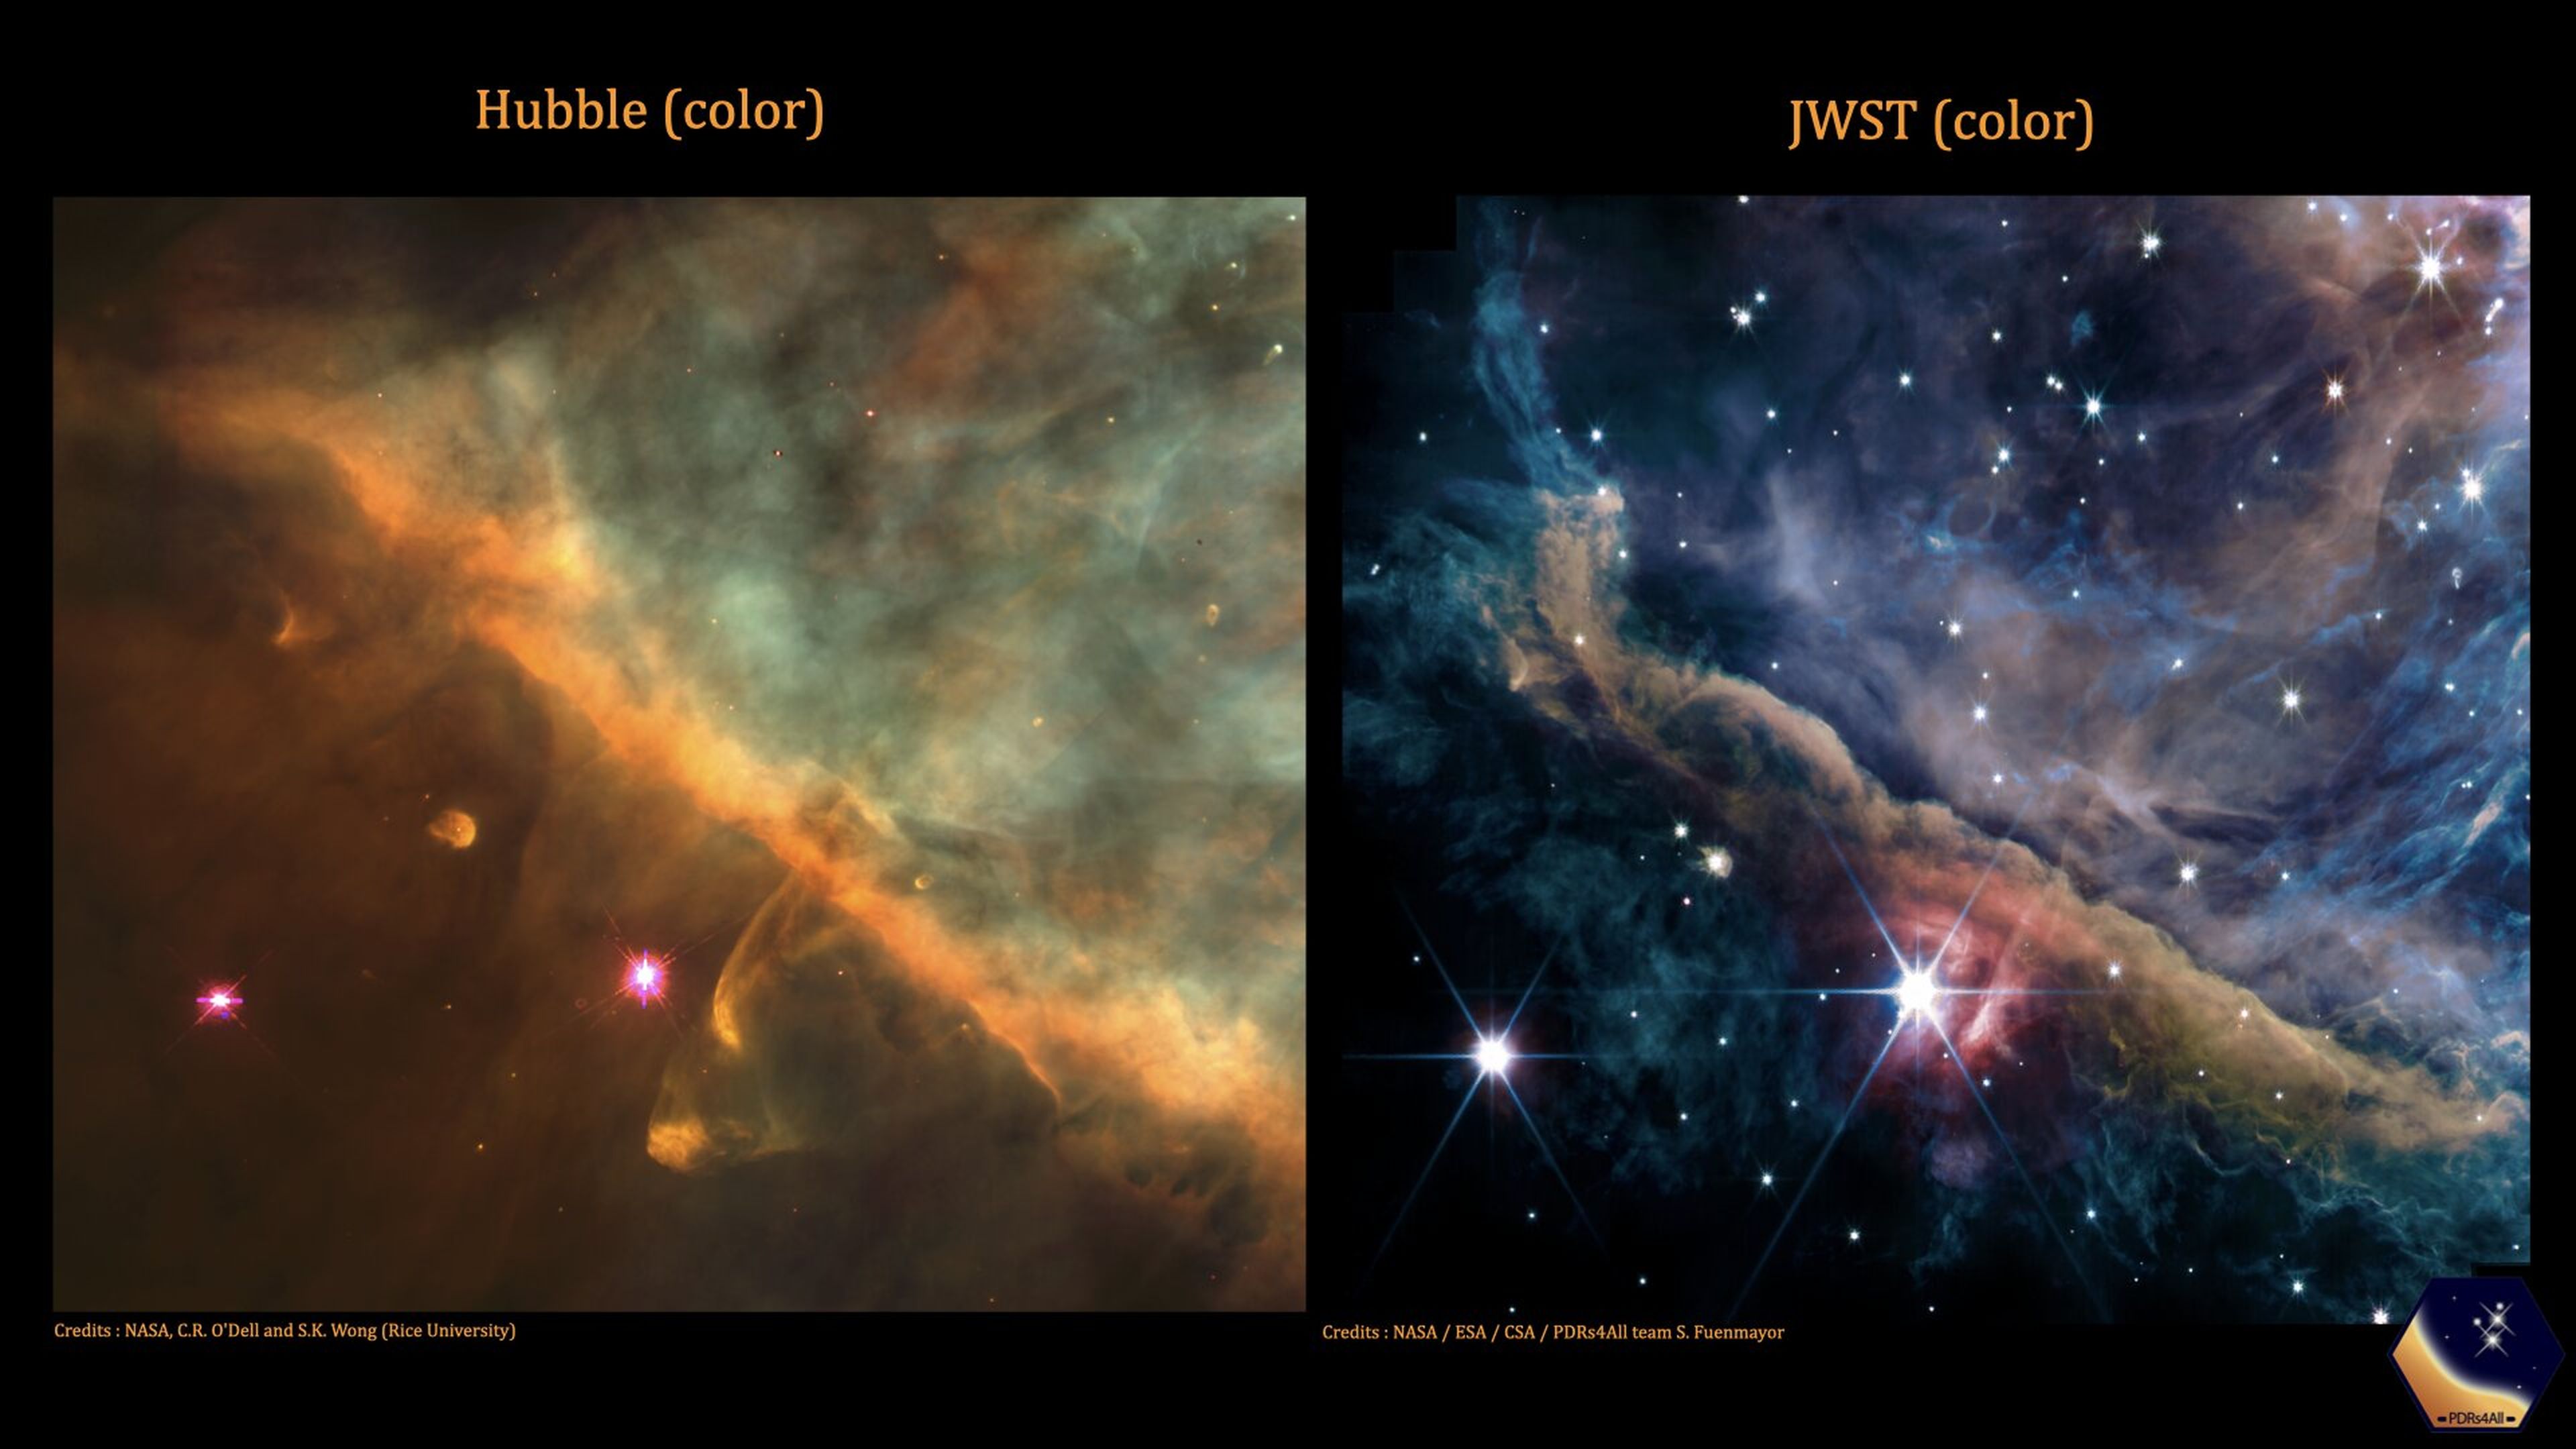 Comparativa de la Nebulosa de Orión entre el Hubble (izquierda) y el JWST (derecha).